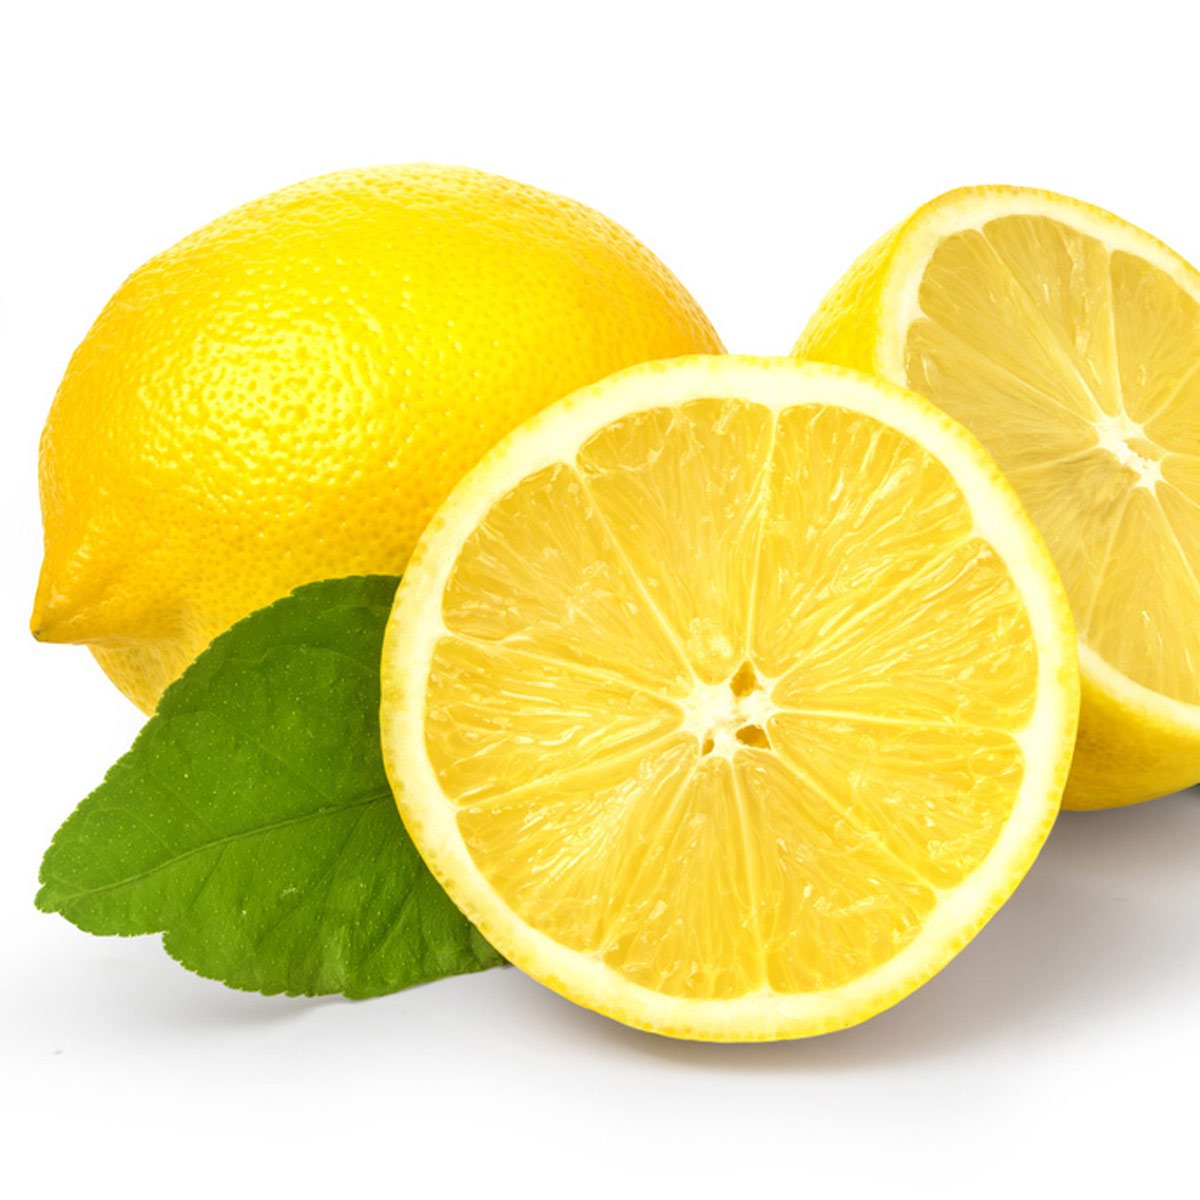 الليمون للعناية بالبشرة